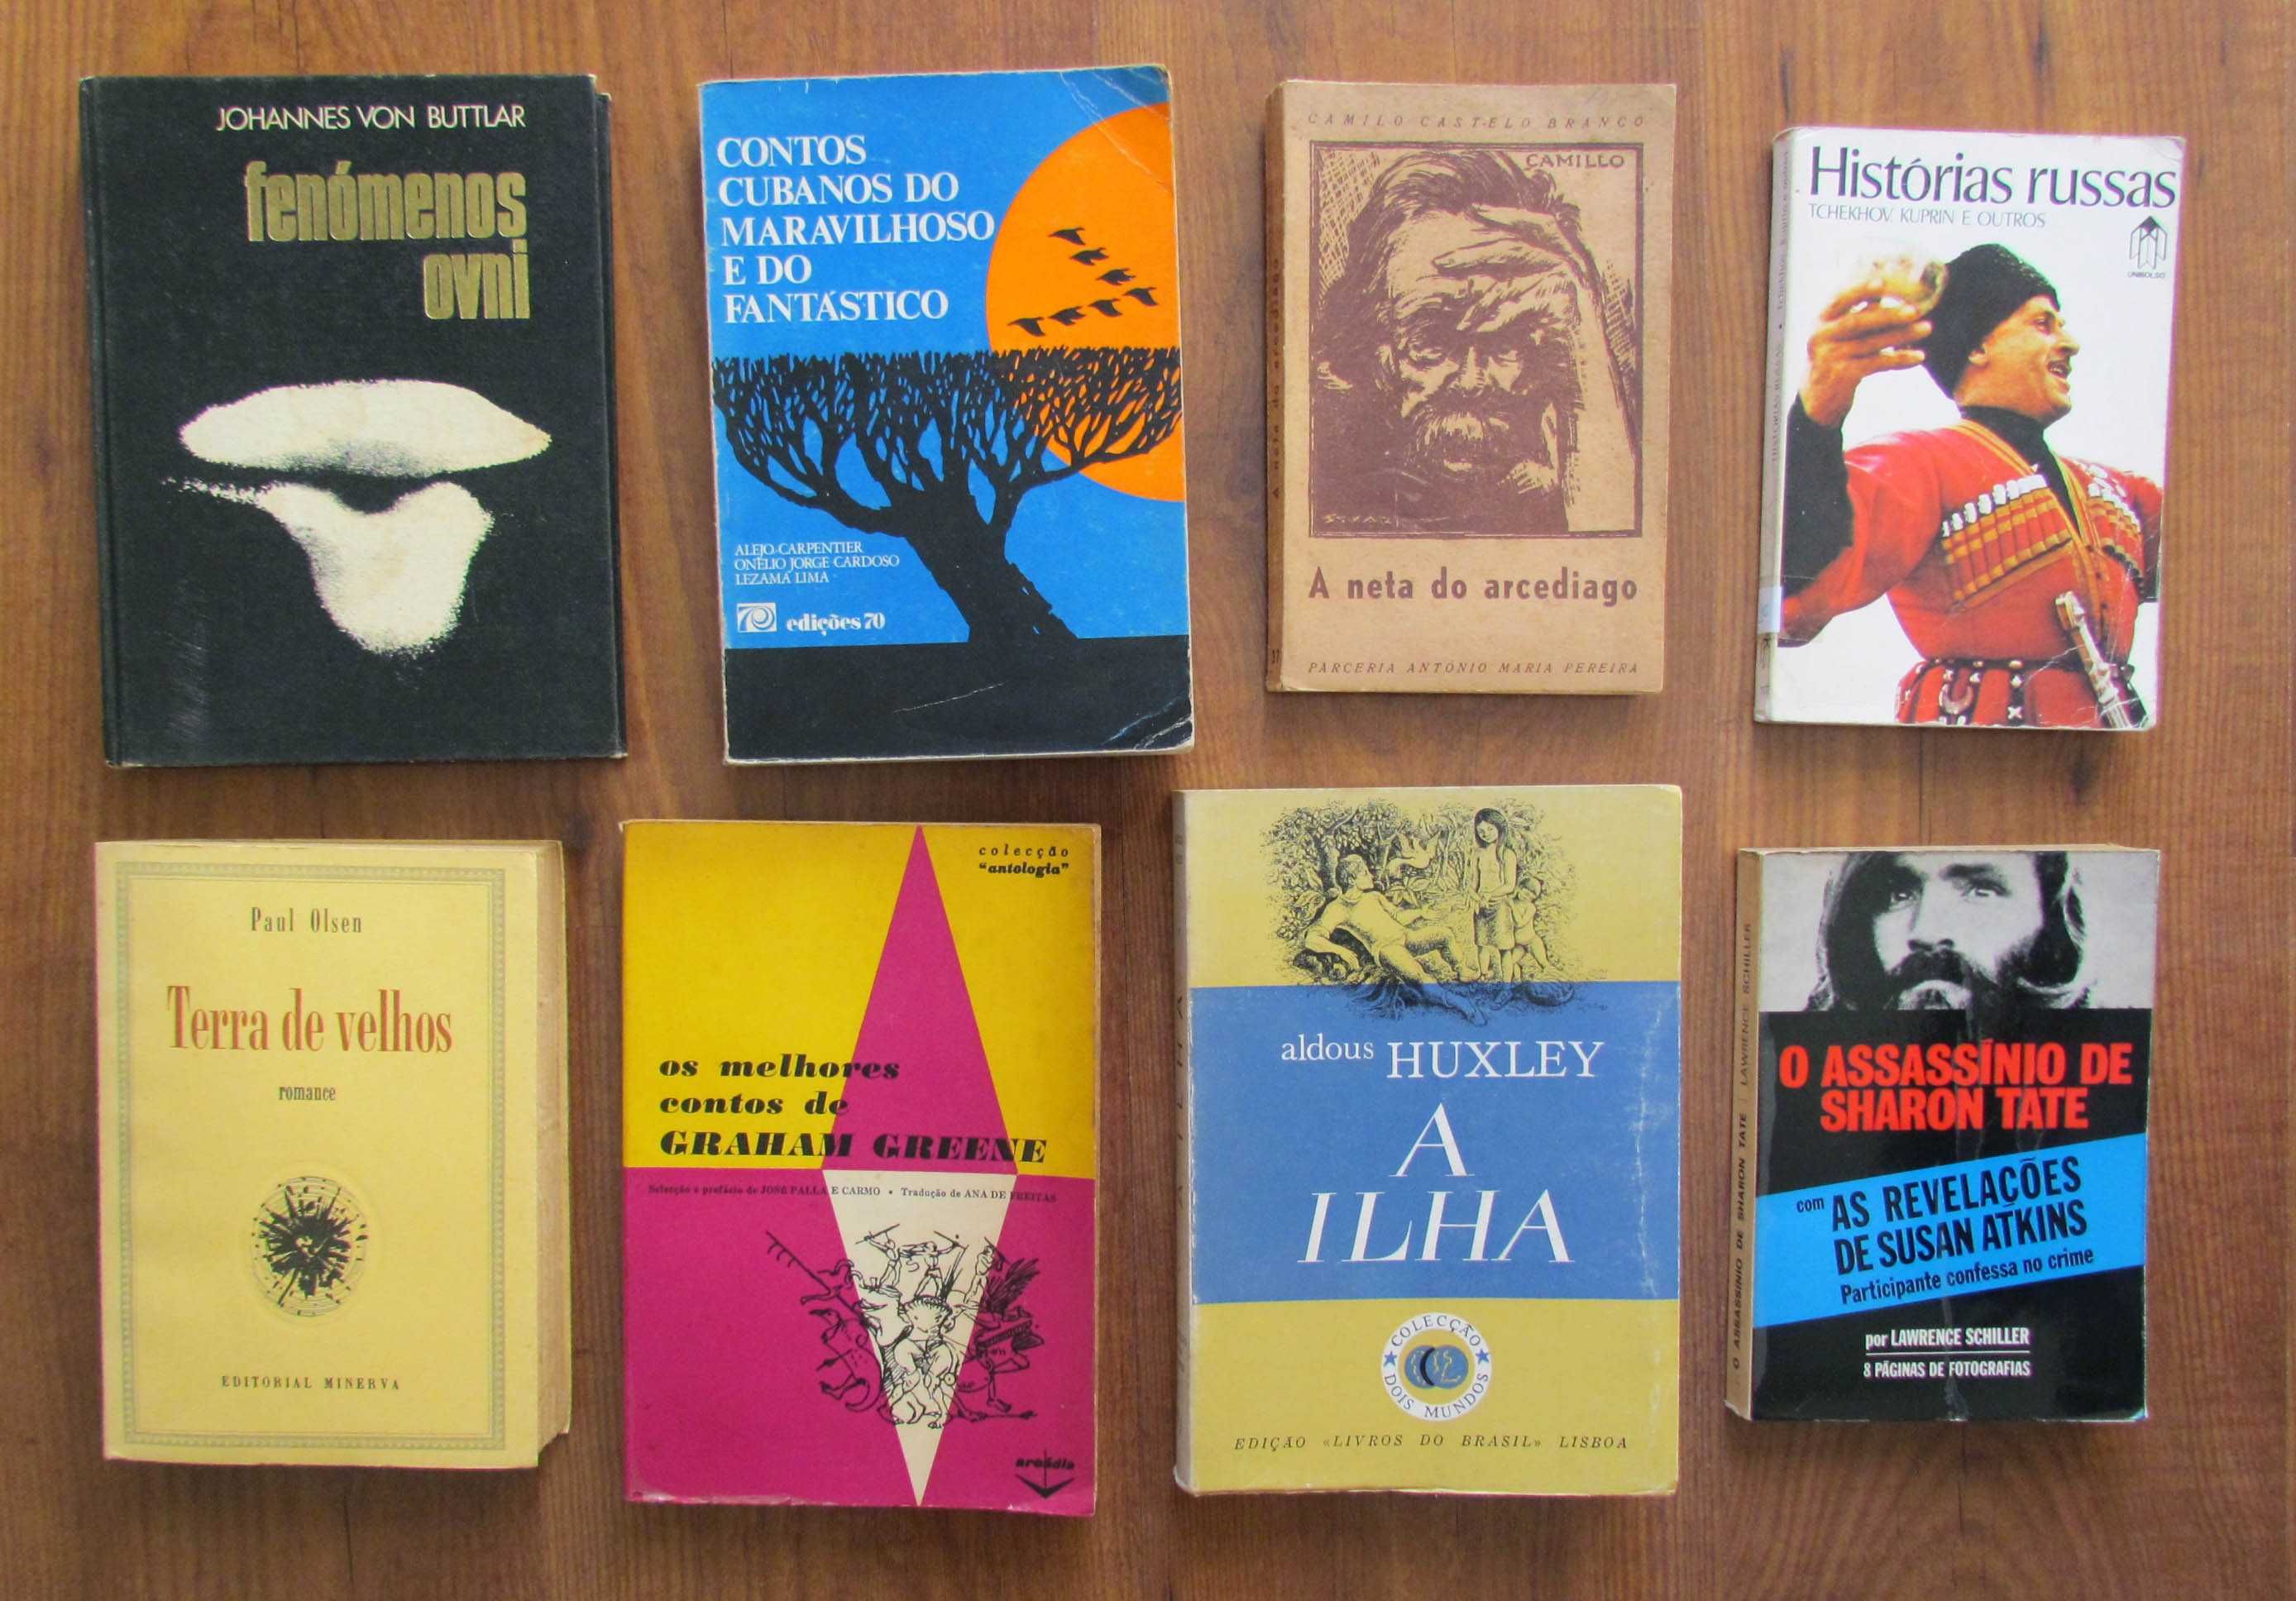 Livros Autores vários entre 2 e 5 Eur  (Huxley, Tchekhov)